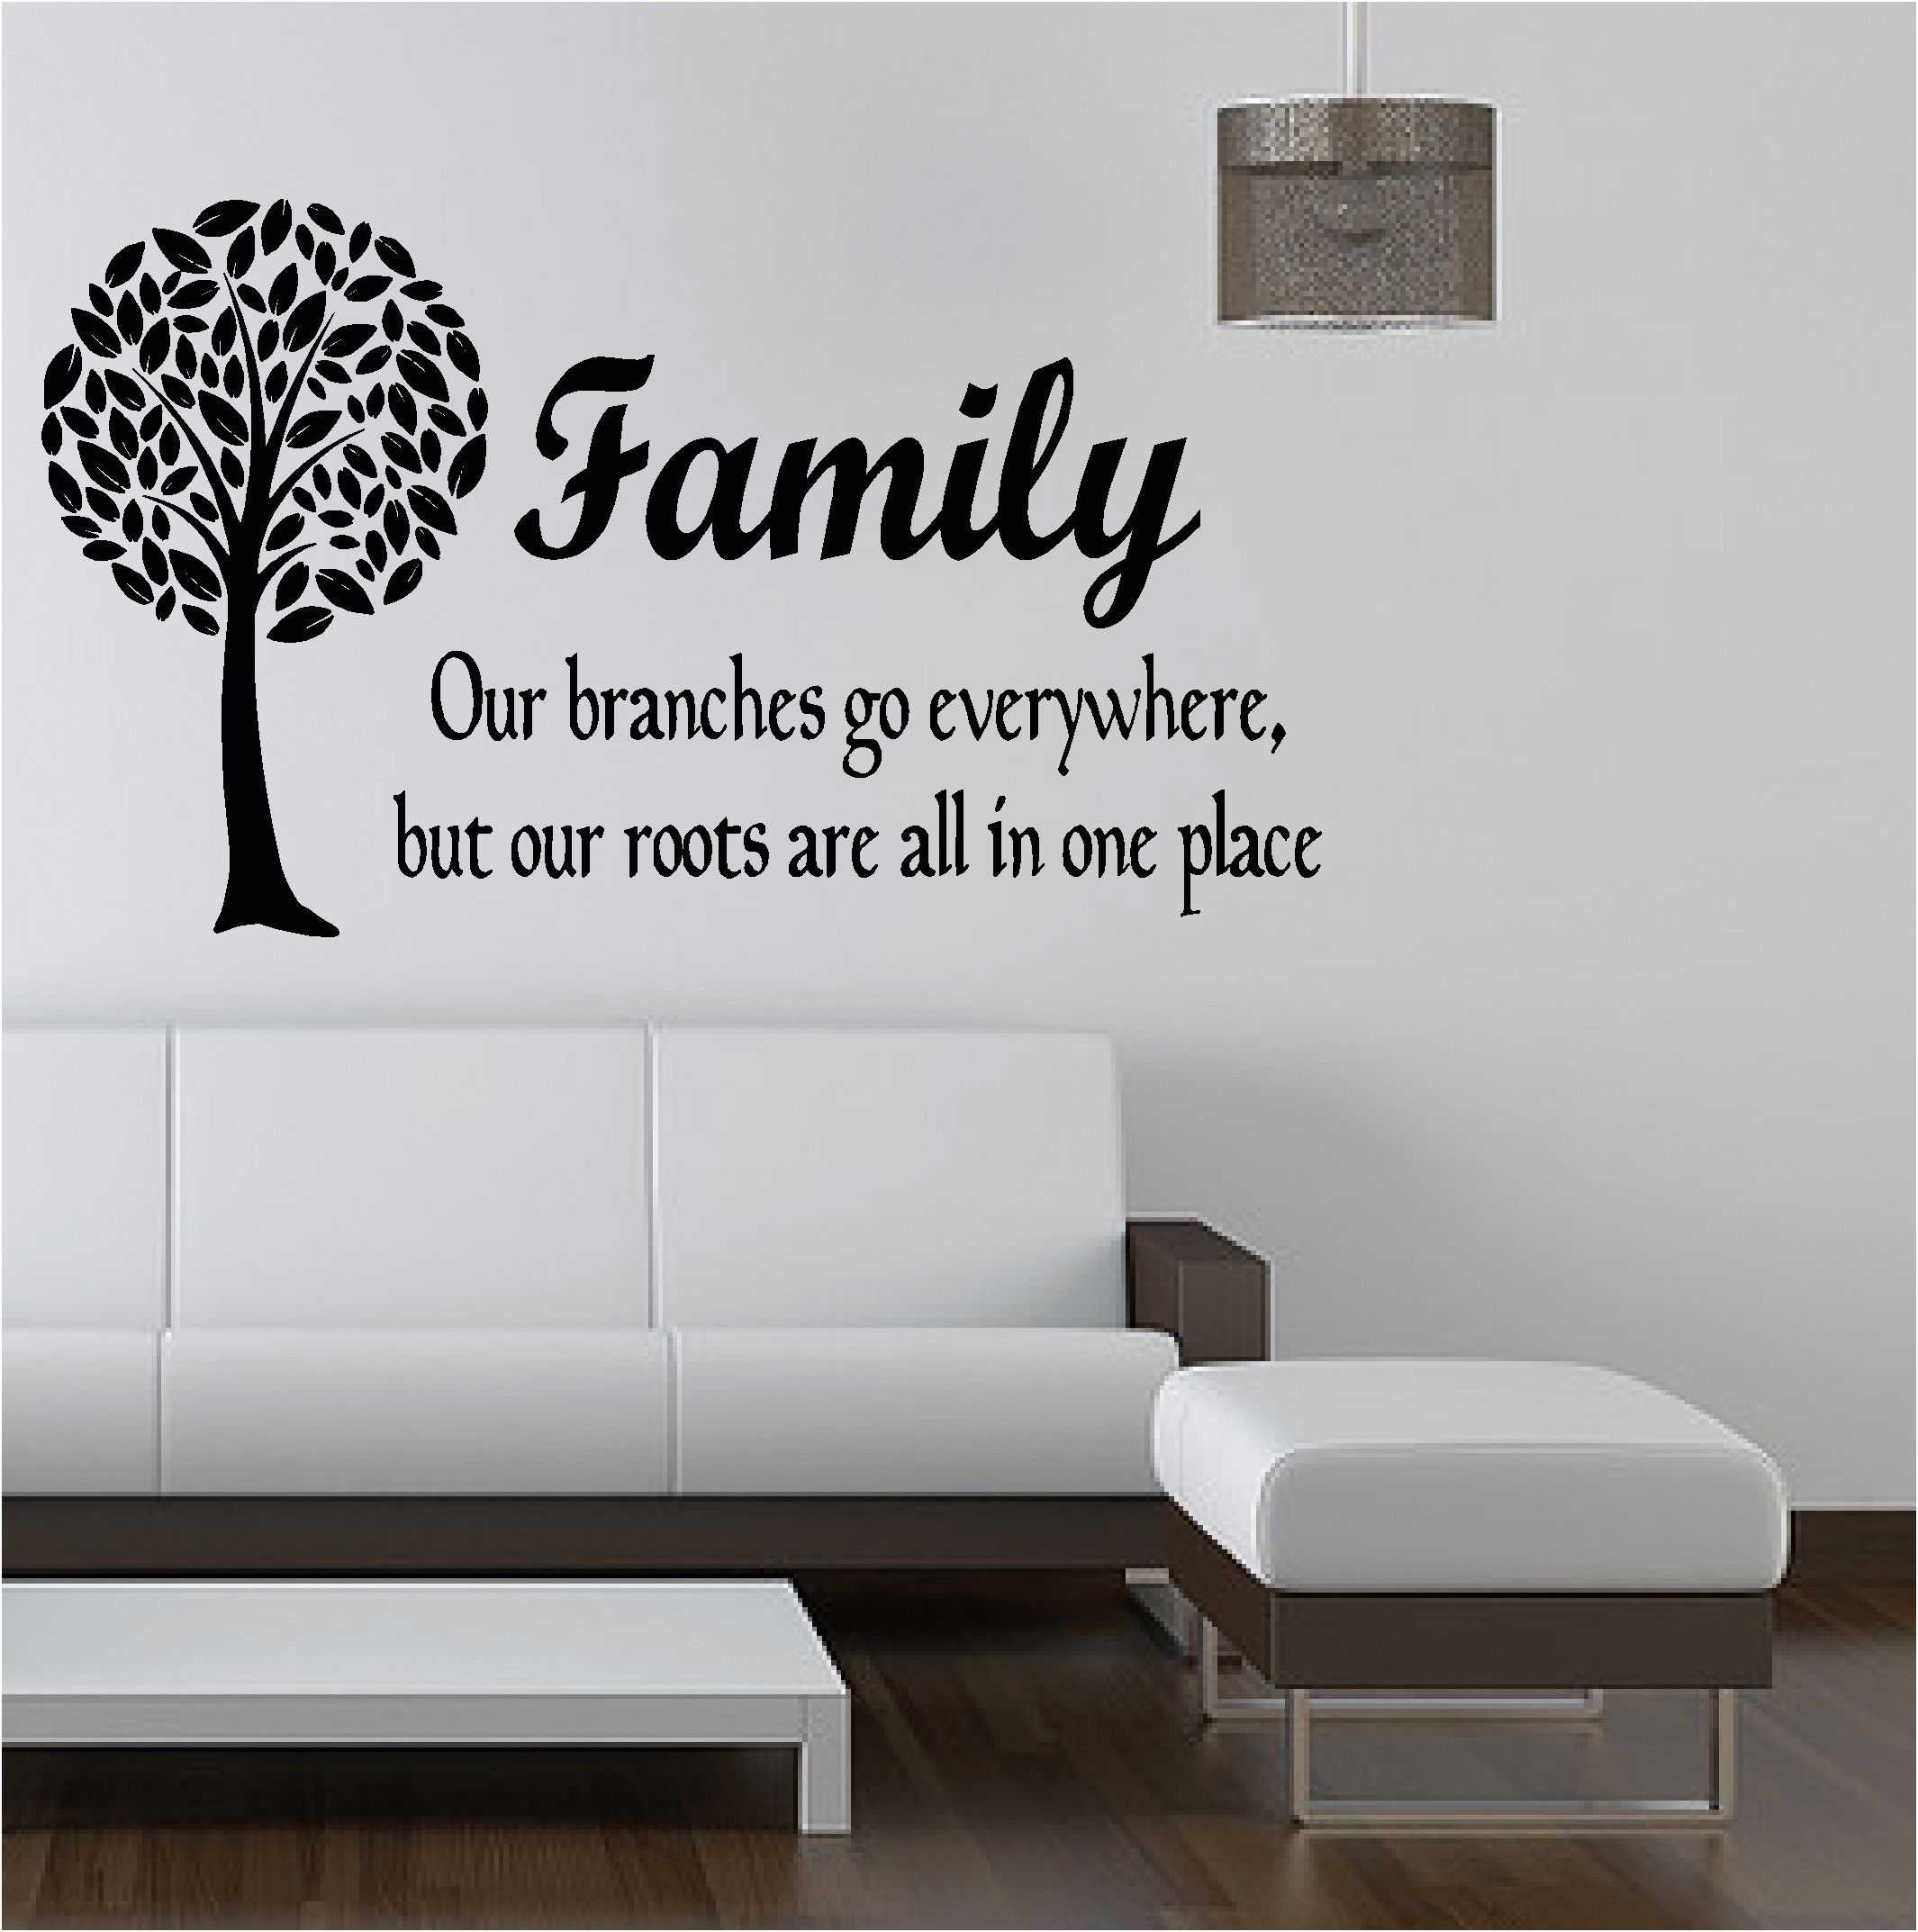 Family Tree Wall Art Vinyl Wwwpixsharkcom Images, Family Wall Art Regarding Family Tree Wall Art (Photo 20 of 20)